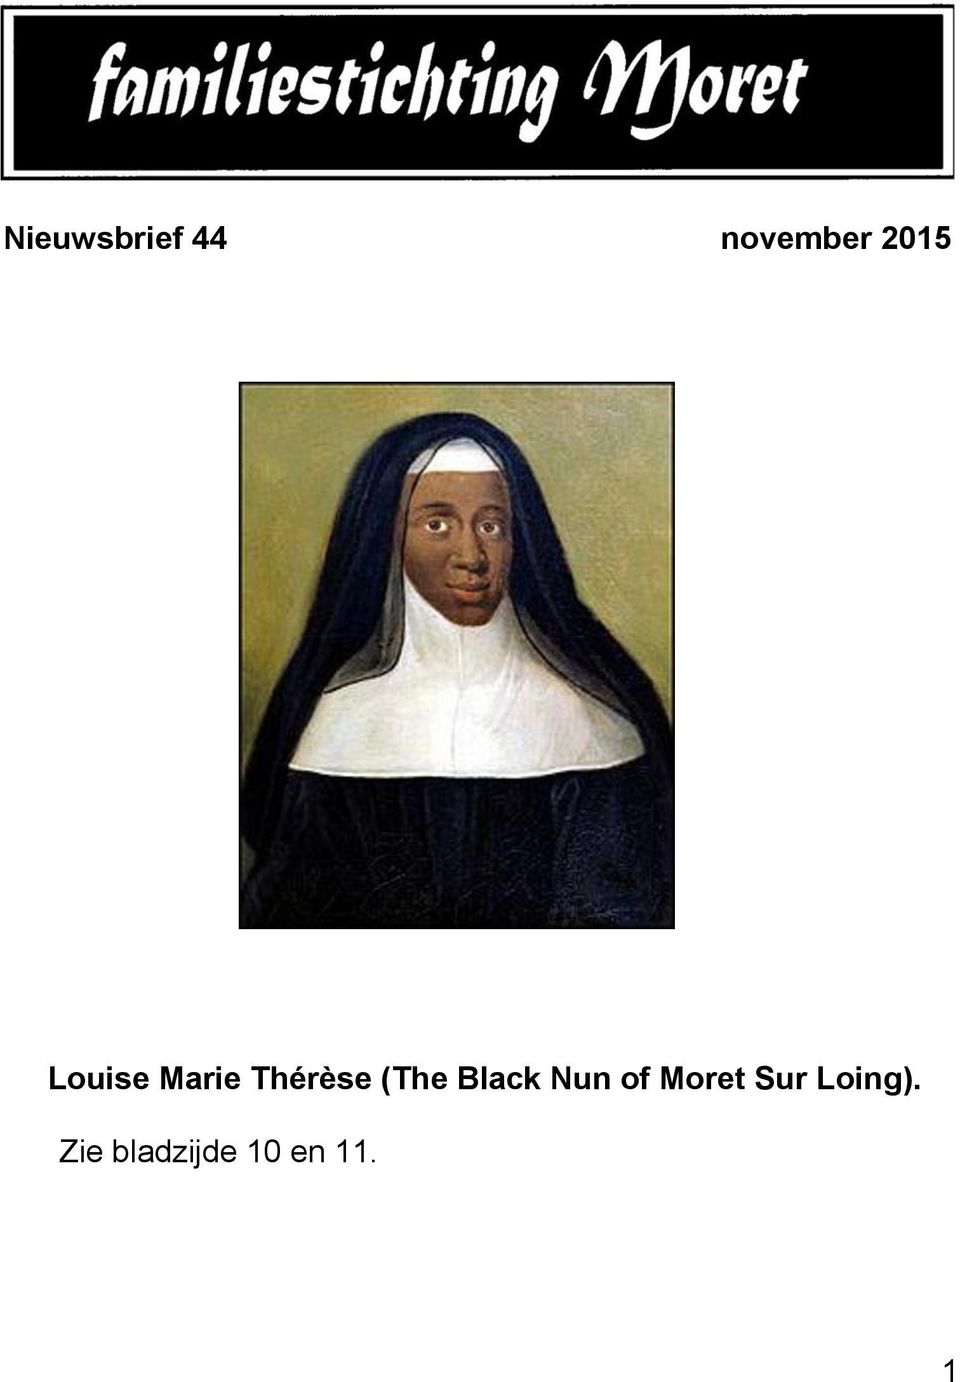 (The Black Nun of Moret Sur